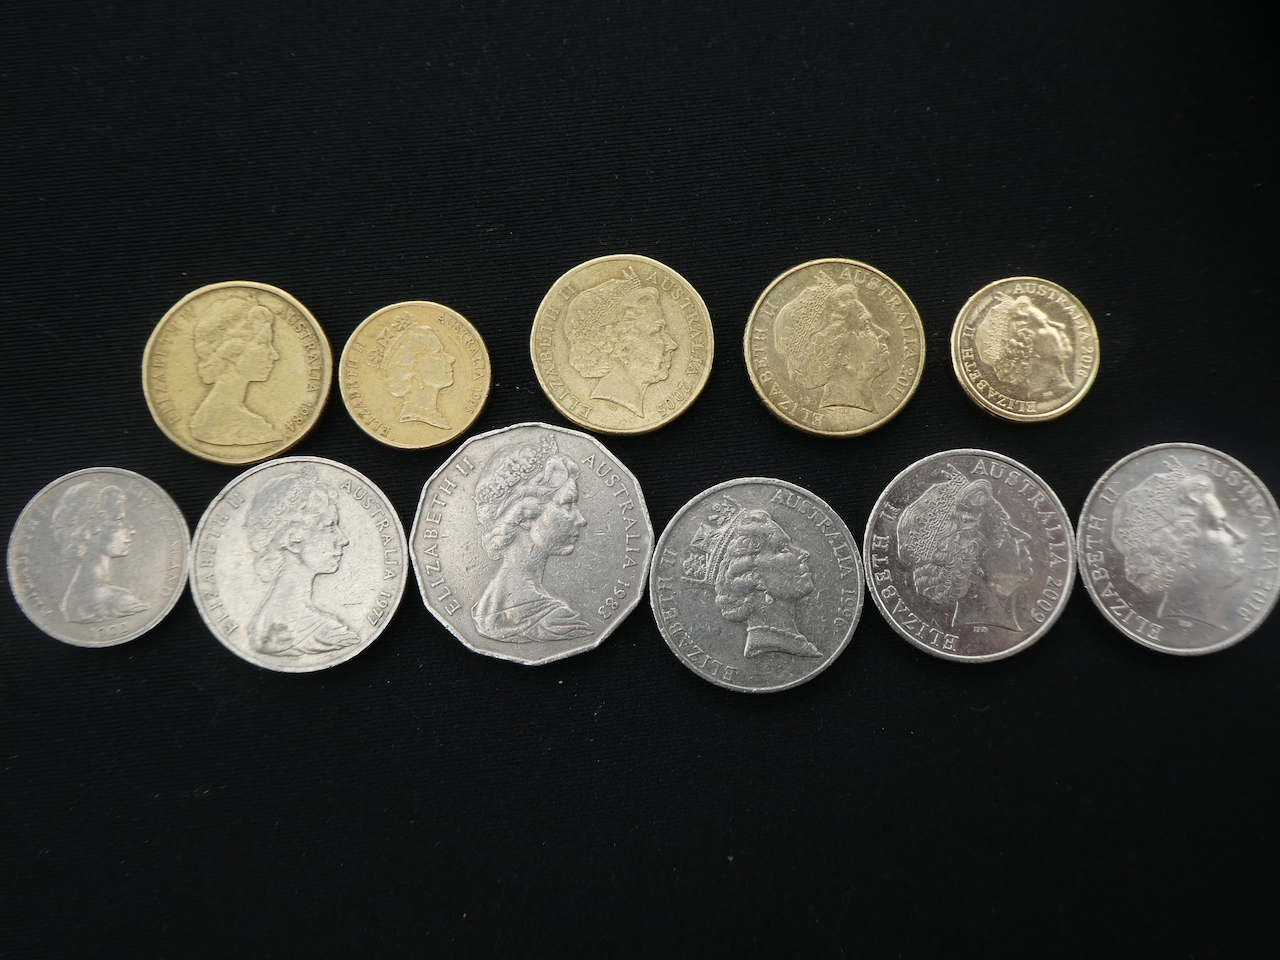 Od lewej monety starsze z portretami młodej królowej, po prawej monety nowsze ze starszą królową